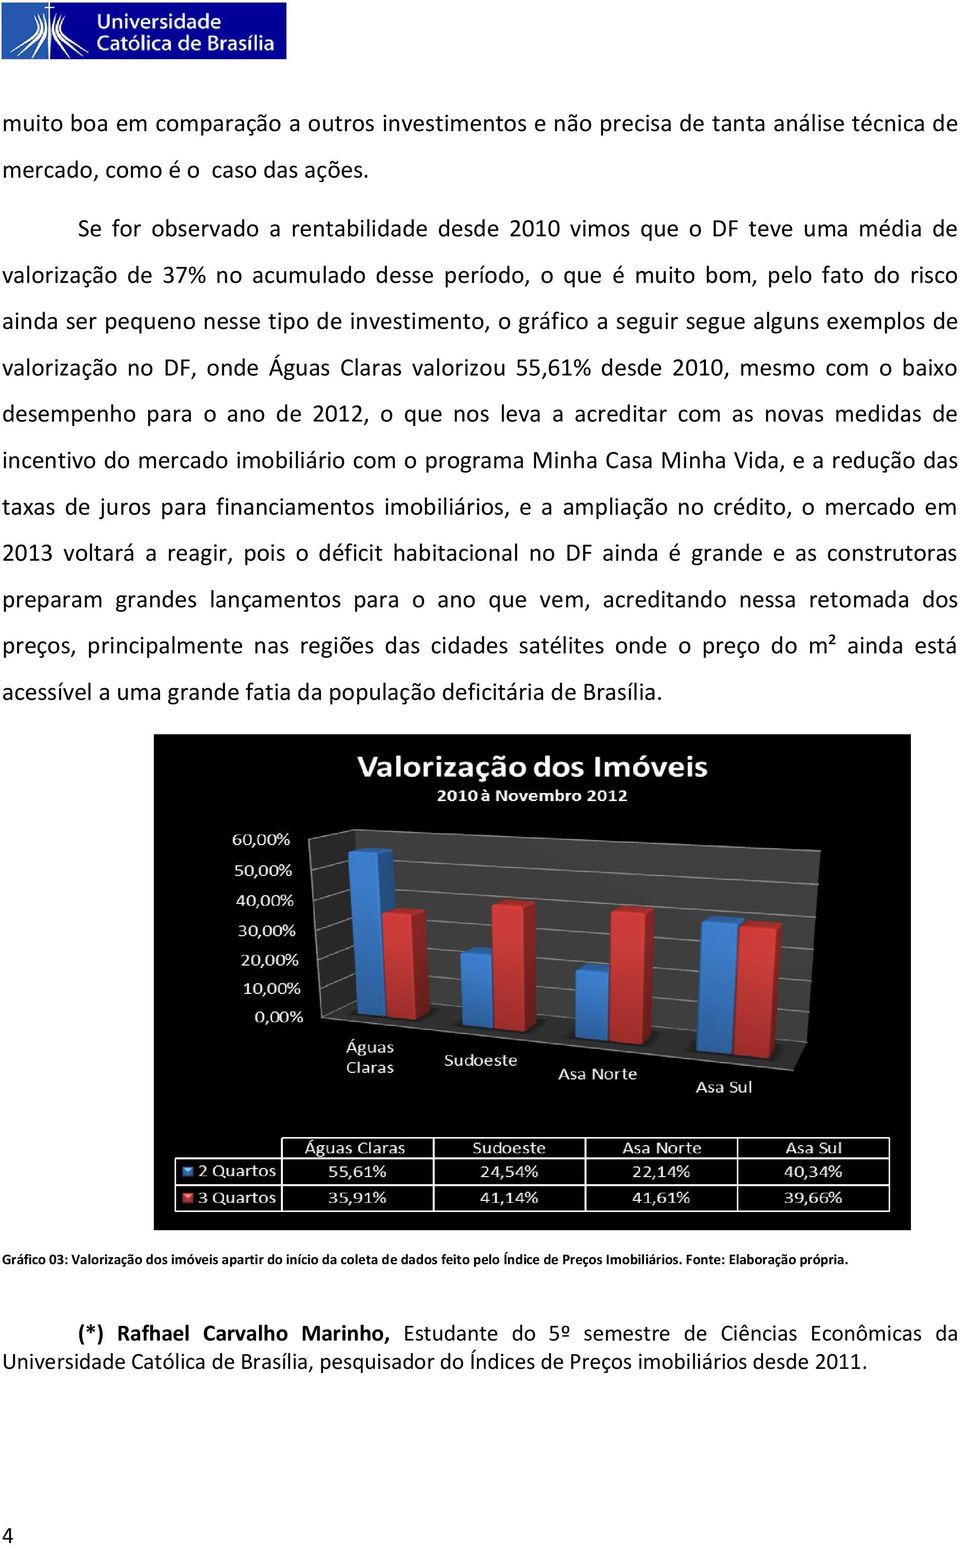 investimento, o gráfico a seguir segue alguns exemplos de valorização no DF, onde Águas Claras valorizou 55,61% desde 2010, mesmo com o baixo desempenho para o ano de 2012, o que nos leva a acreditar